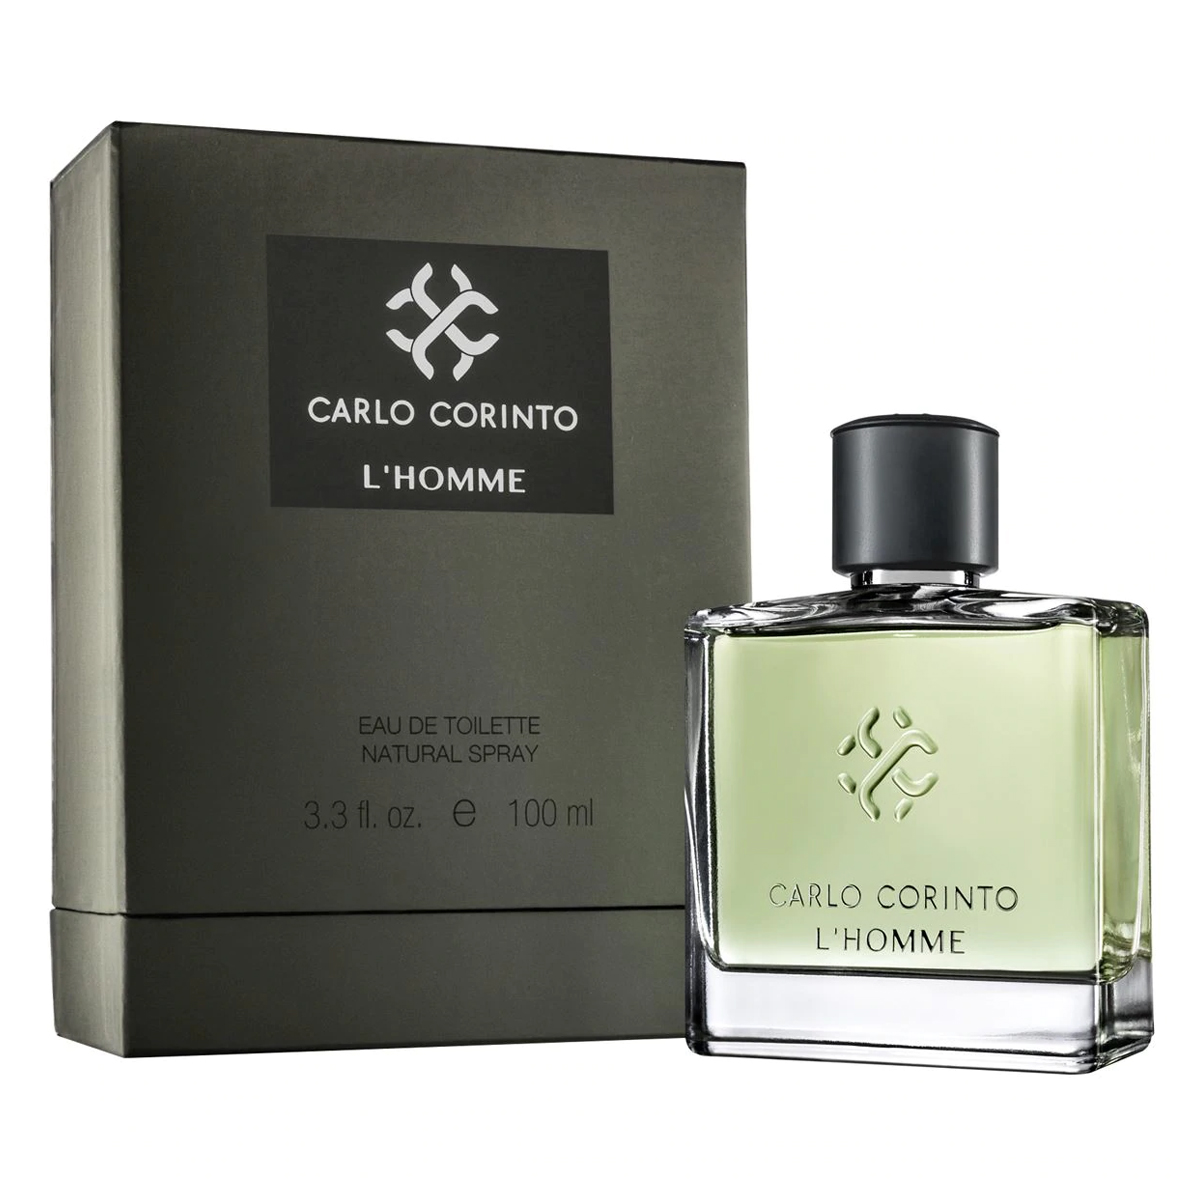 Perfume Uomo Moschino Hombre De Moschino Edt 125ml Original – demayoreo